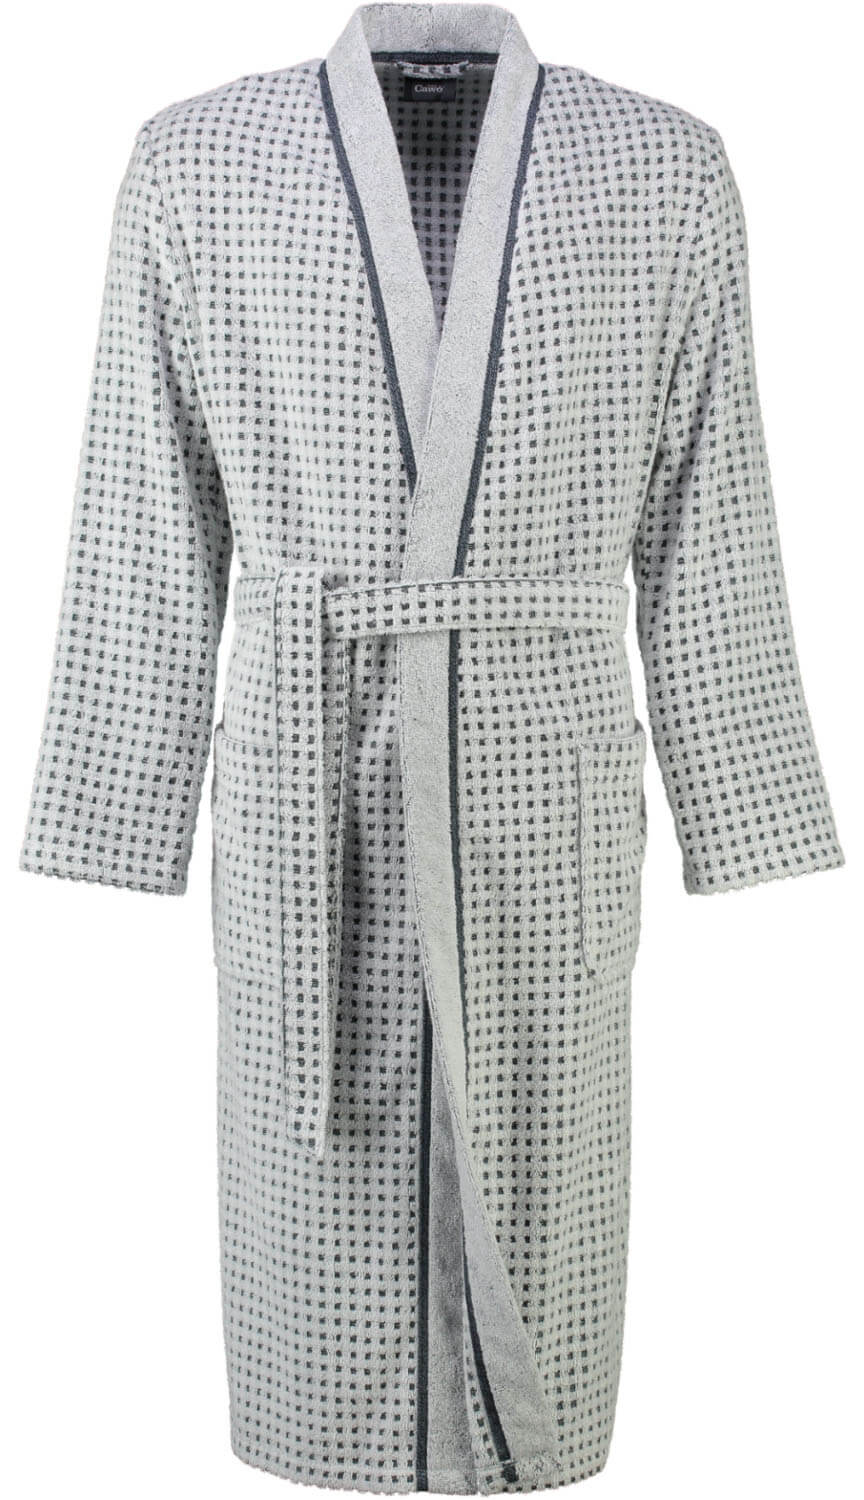 Мужской халат Kimono Weib Grau ☞ Размер: 50/52